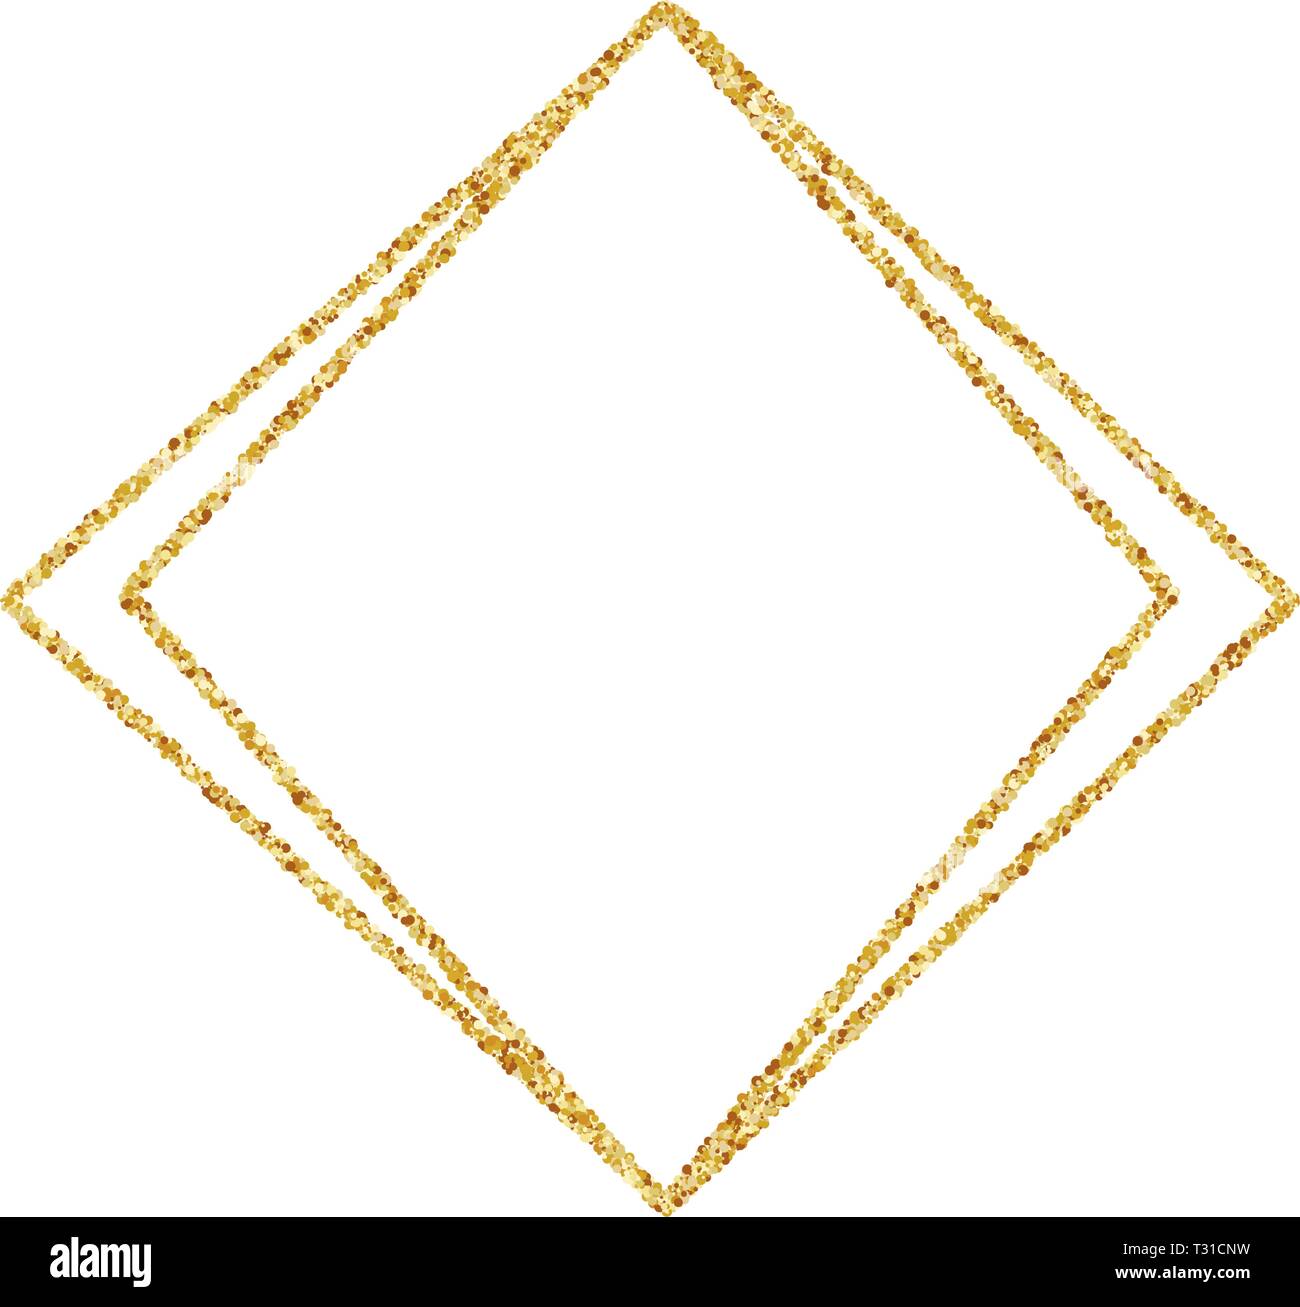 Geometrische Gold Rahmen Fur Hochzeit Oder Geburtstag Einladung Hintergrund Vektor Modernes Design Template Fur Broschure Plakat Oder Greetina Karte Art Deco Stock Vektorgrafik Alamy